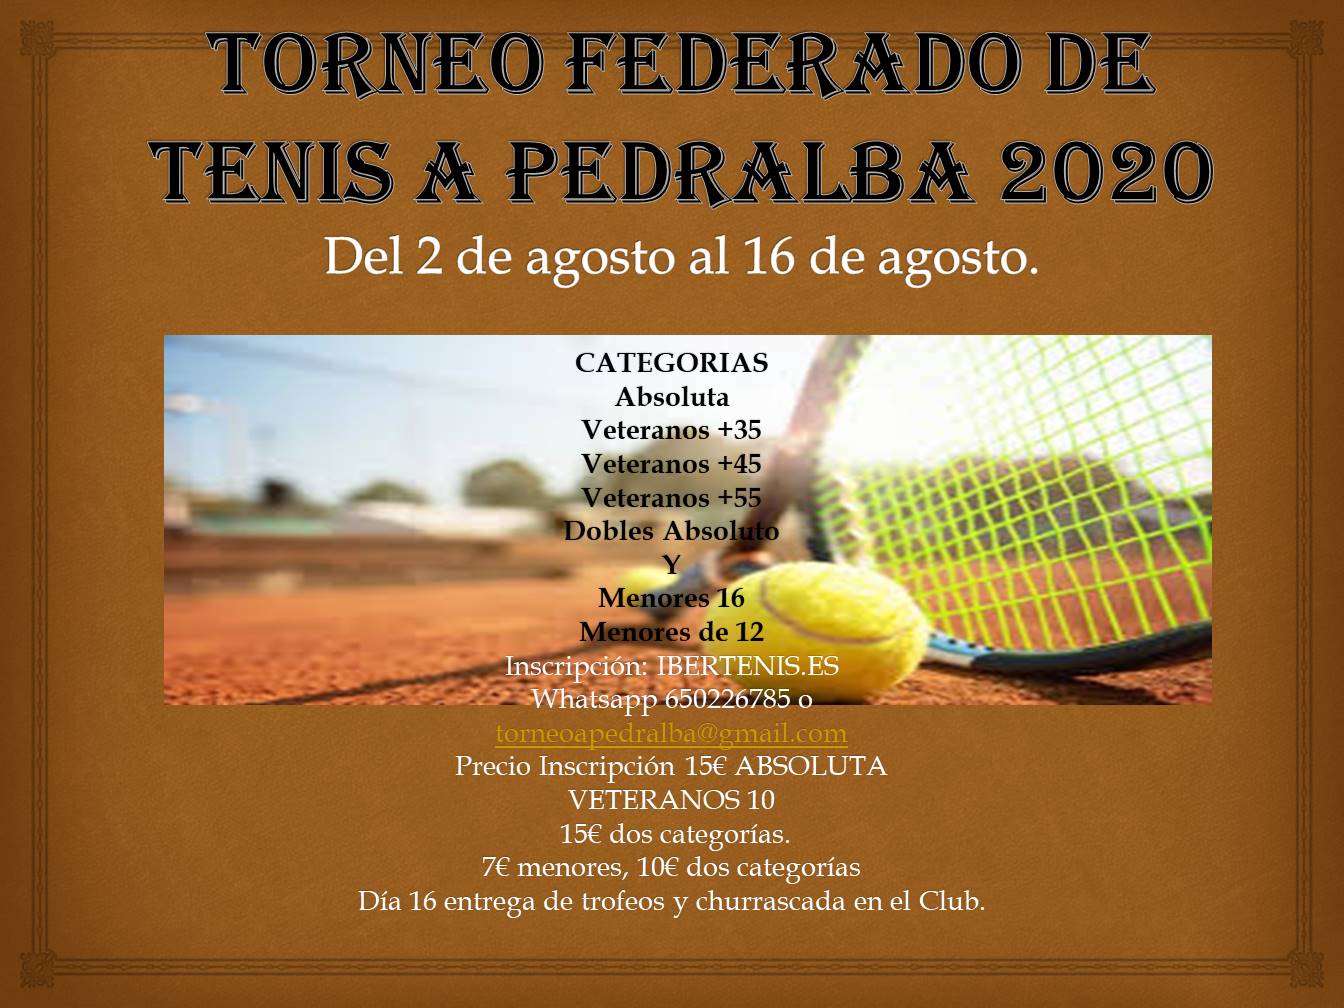 Cartel del Torneo Federado de tenis A Pedralba 2020